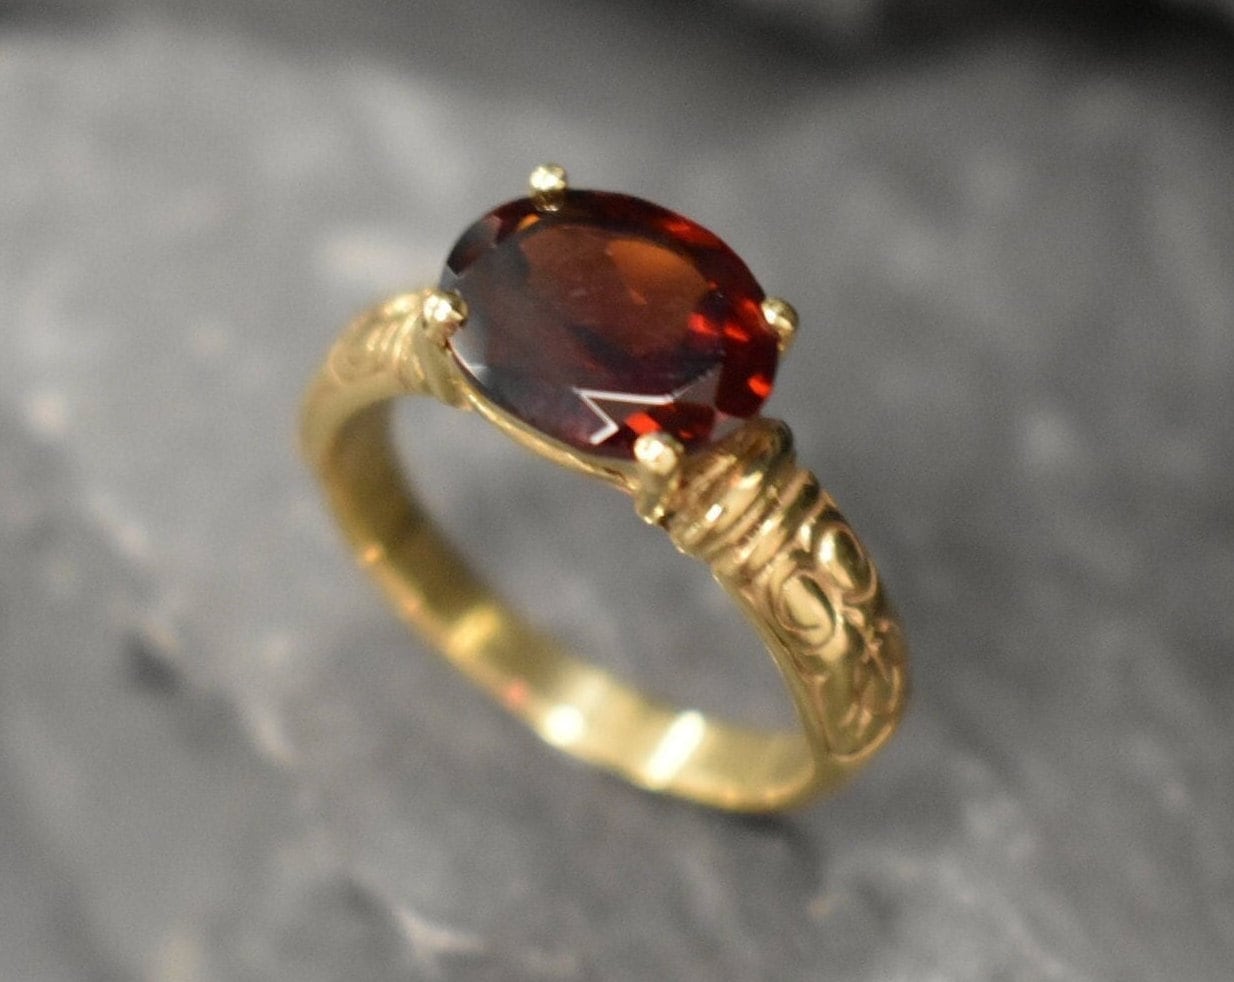 Gold Garnet Ring, Garnet Ring, Natural Garnet, January Birthstone, Tribal Ring, Gold Vintage Ring, Gold Horizontal Ring, Red Diamond Ring